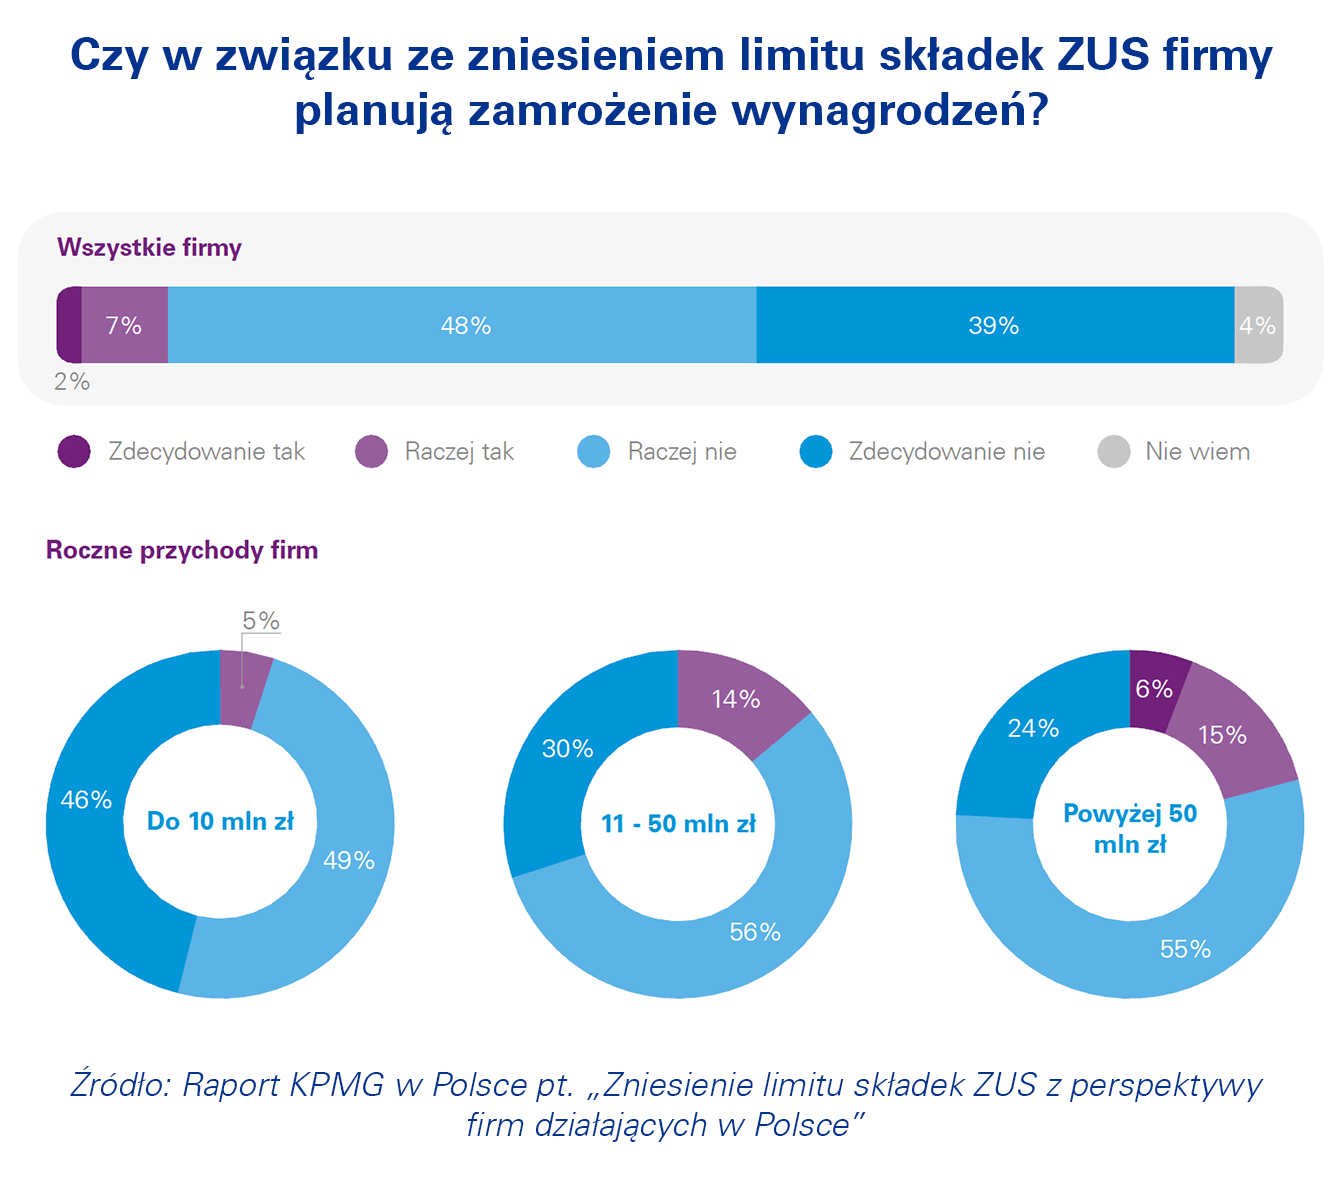 Zniesienie limitu składek ZUS z perspektywy firm działających w Polsce